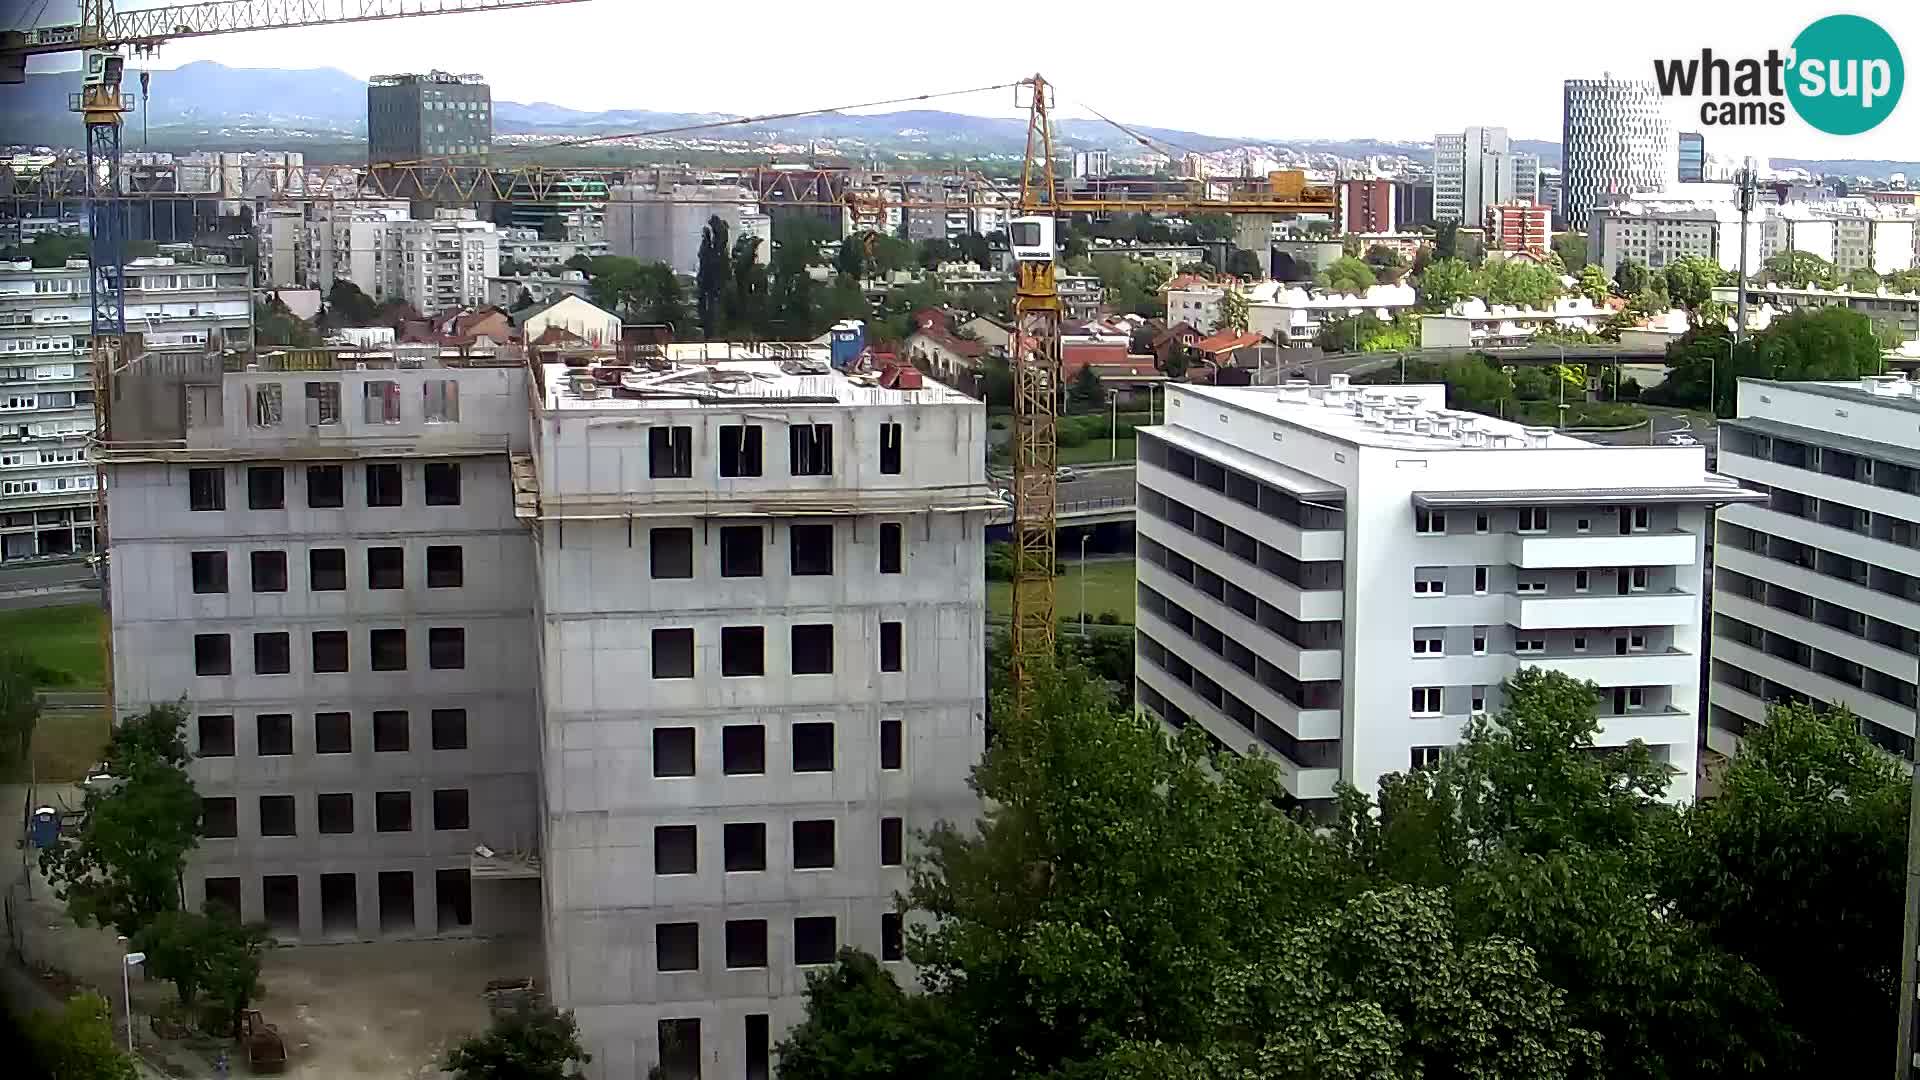 Live-Kreisverkehr Slavonska und Marin Držić Avenue zur Zagreb Webcam